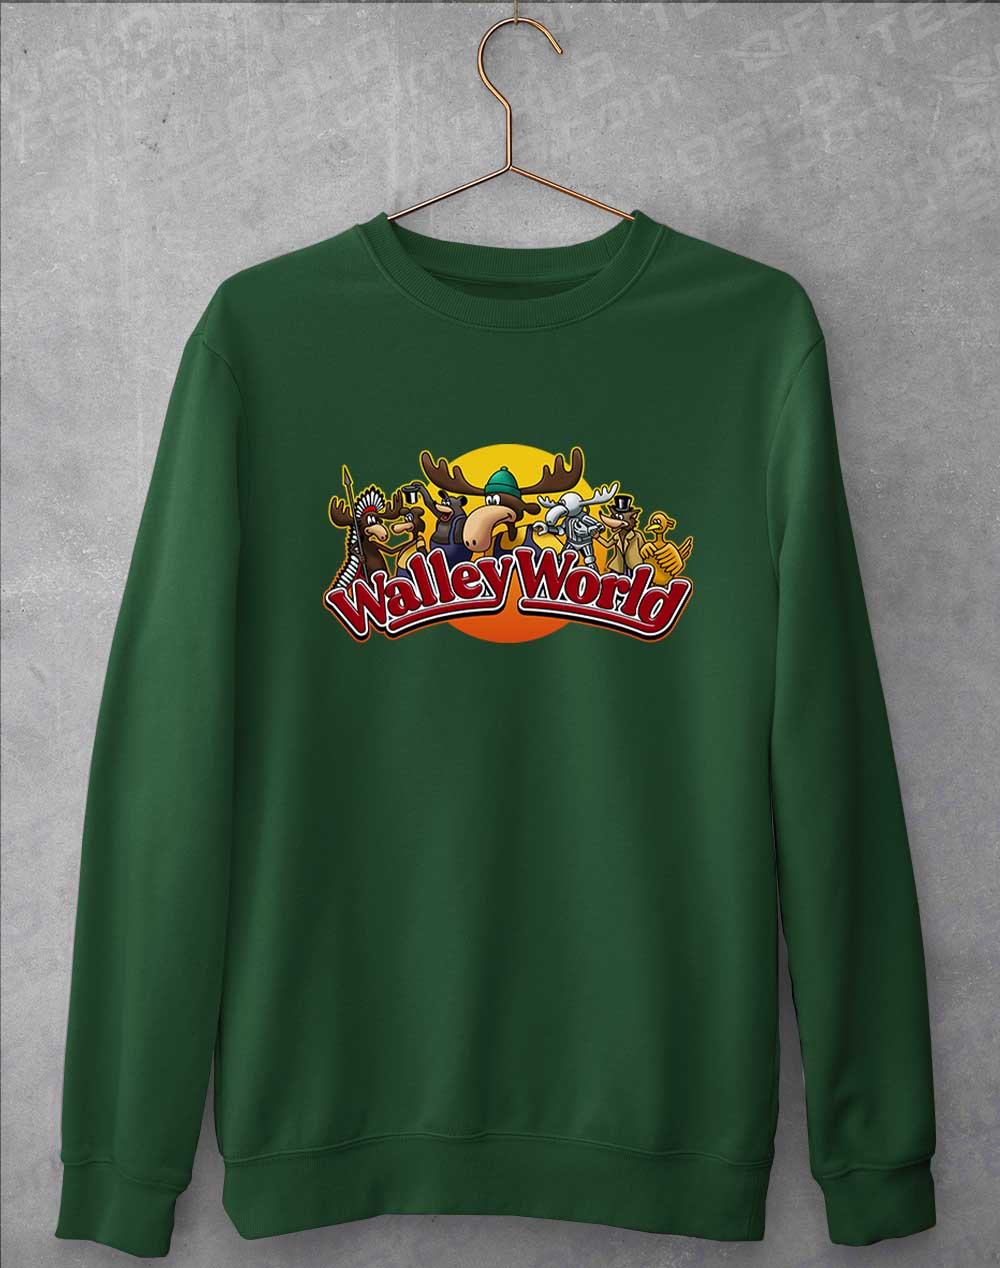 Bottle Green - Walley World Sweatshirt